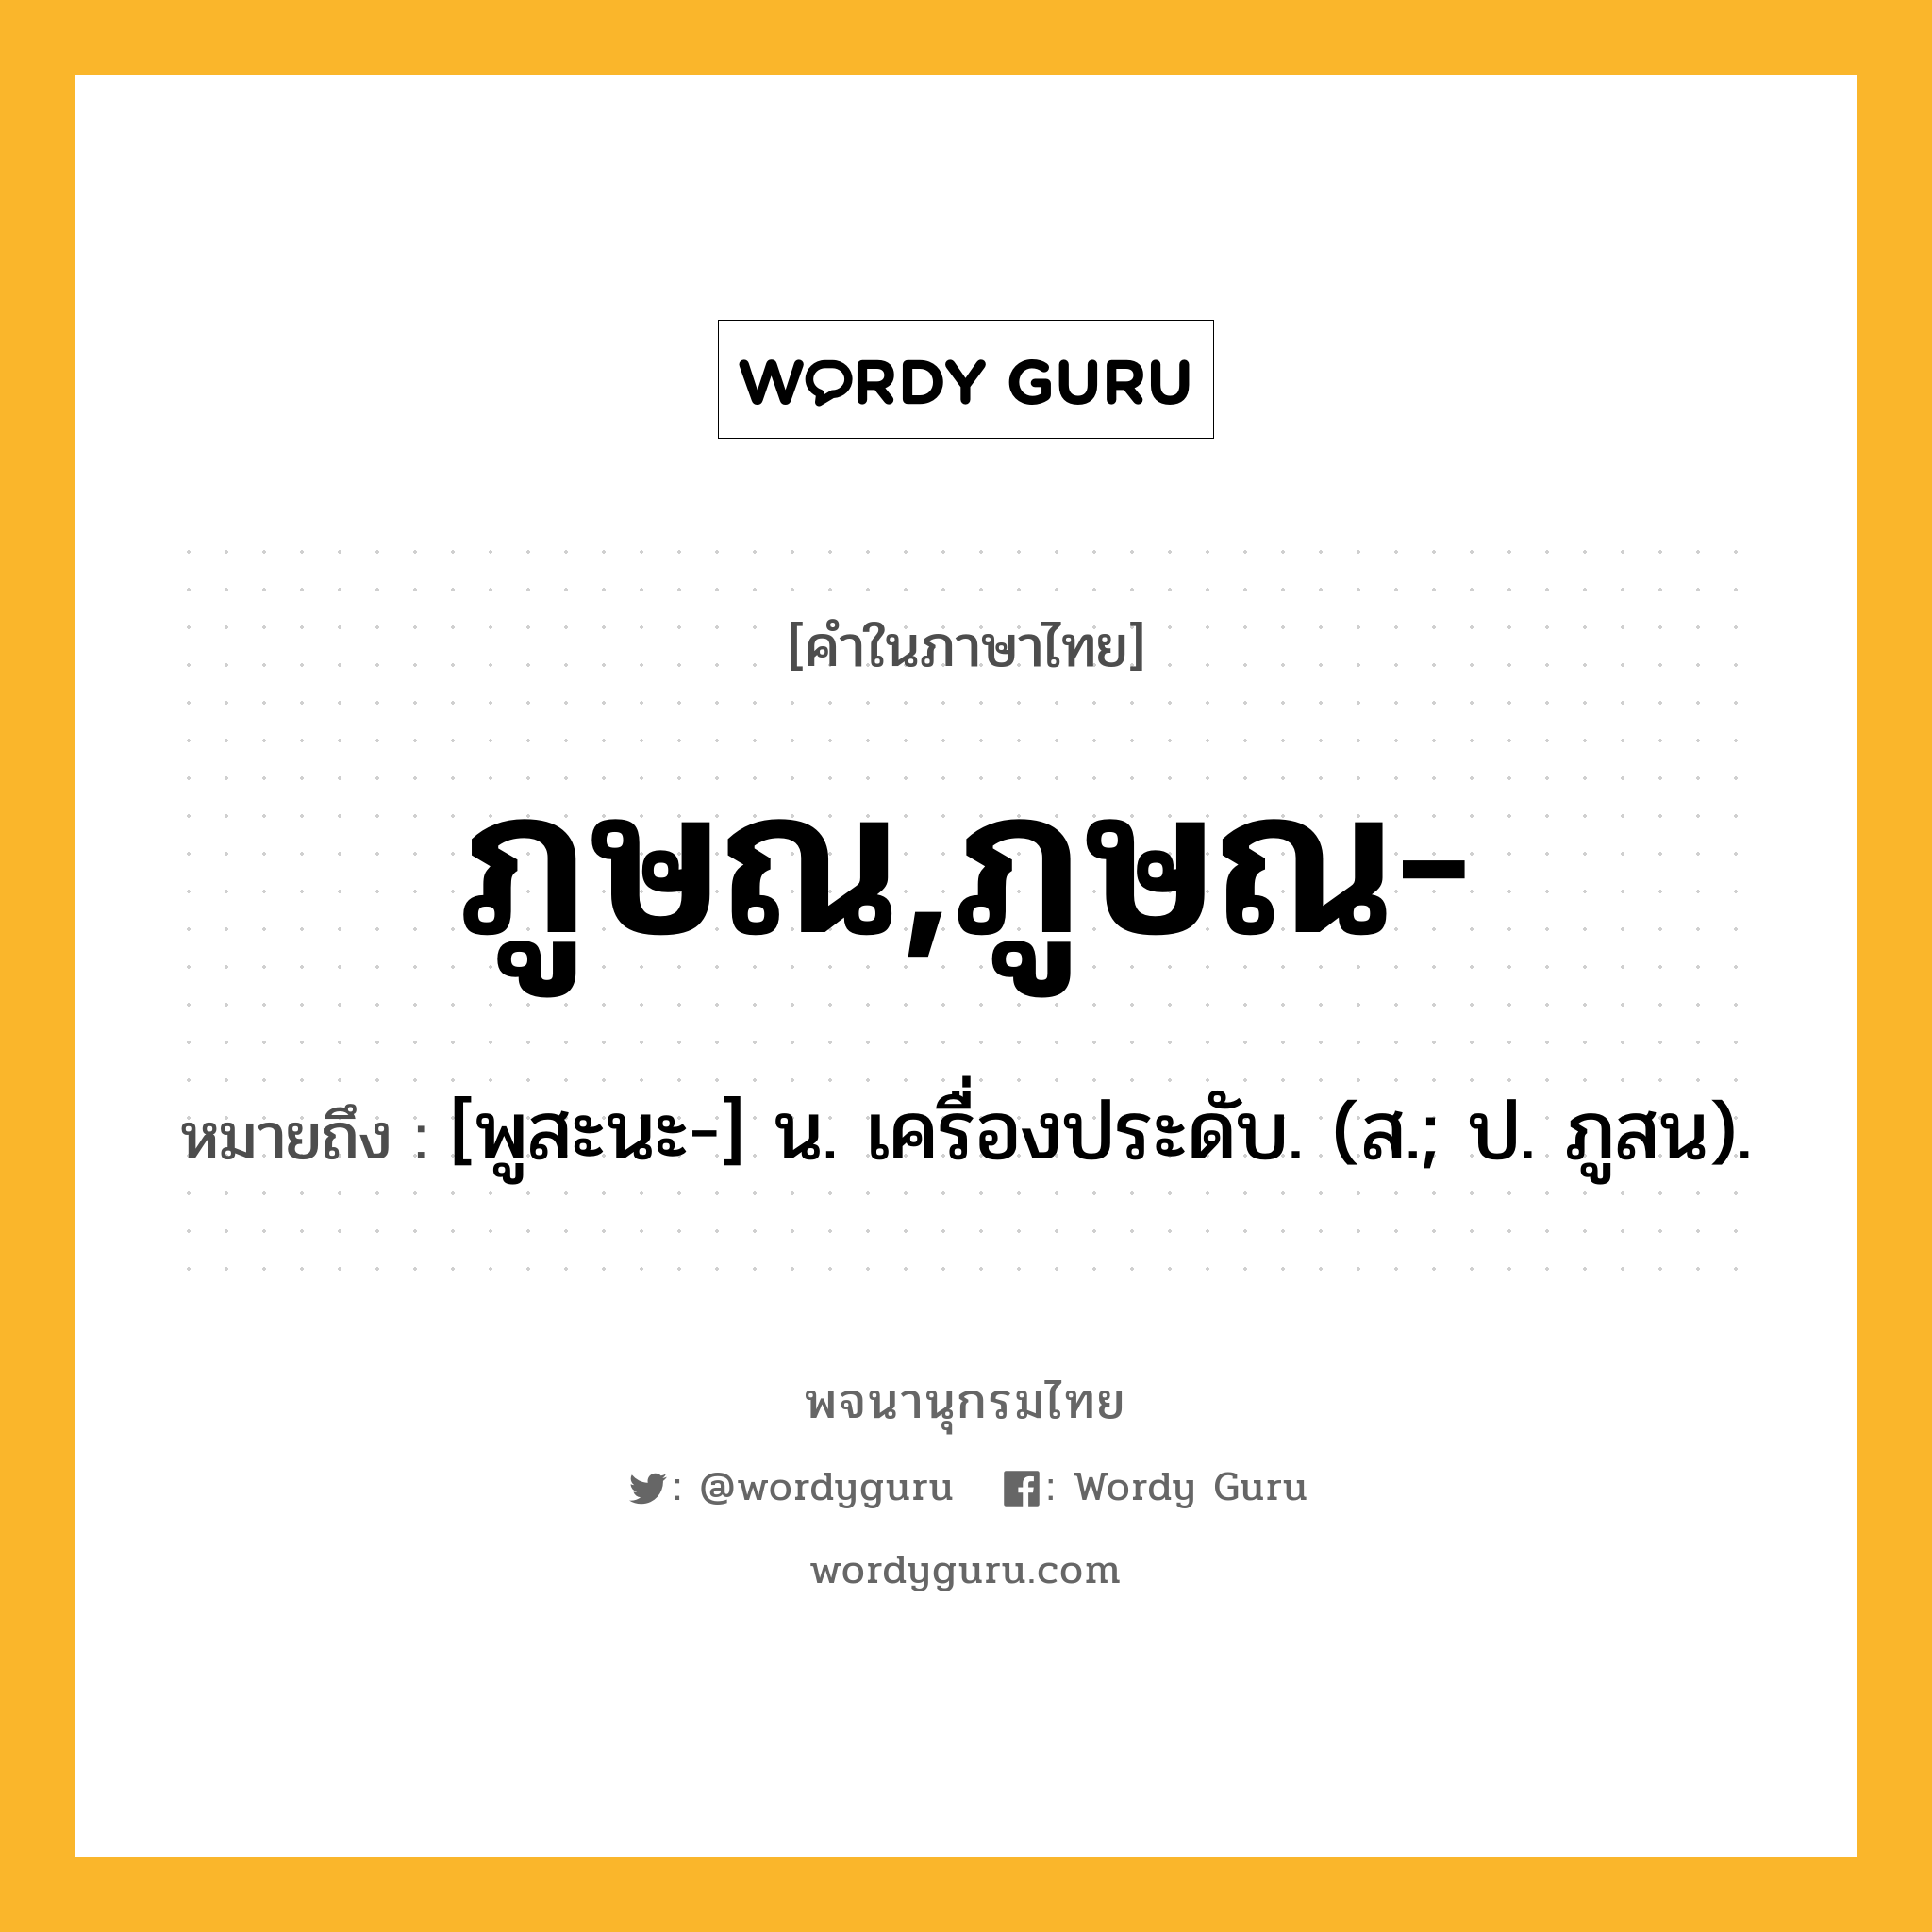 ภูษณ,ภูษณ- หมายถึงอะไร?, คำในภาษาไทย ภูษณ,ภูษณ- หมายถึง [พูสะนะ-] น. เครื่องประดับ. (ส.; ป. ภูสน).